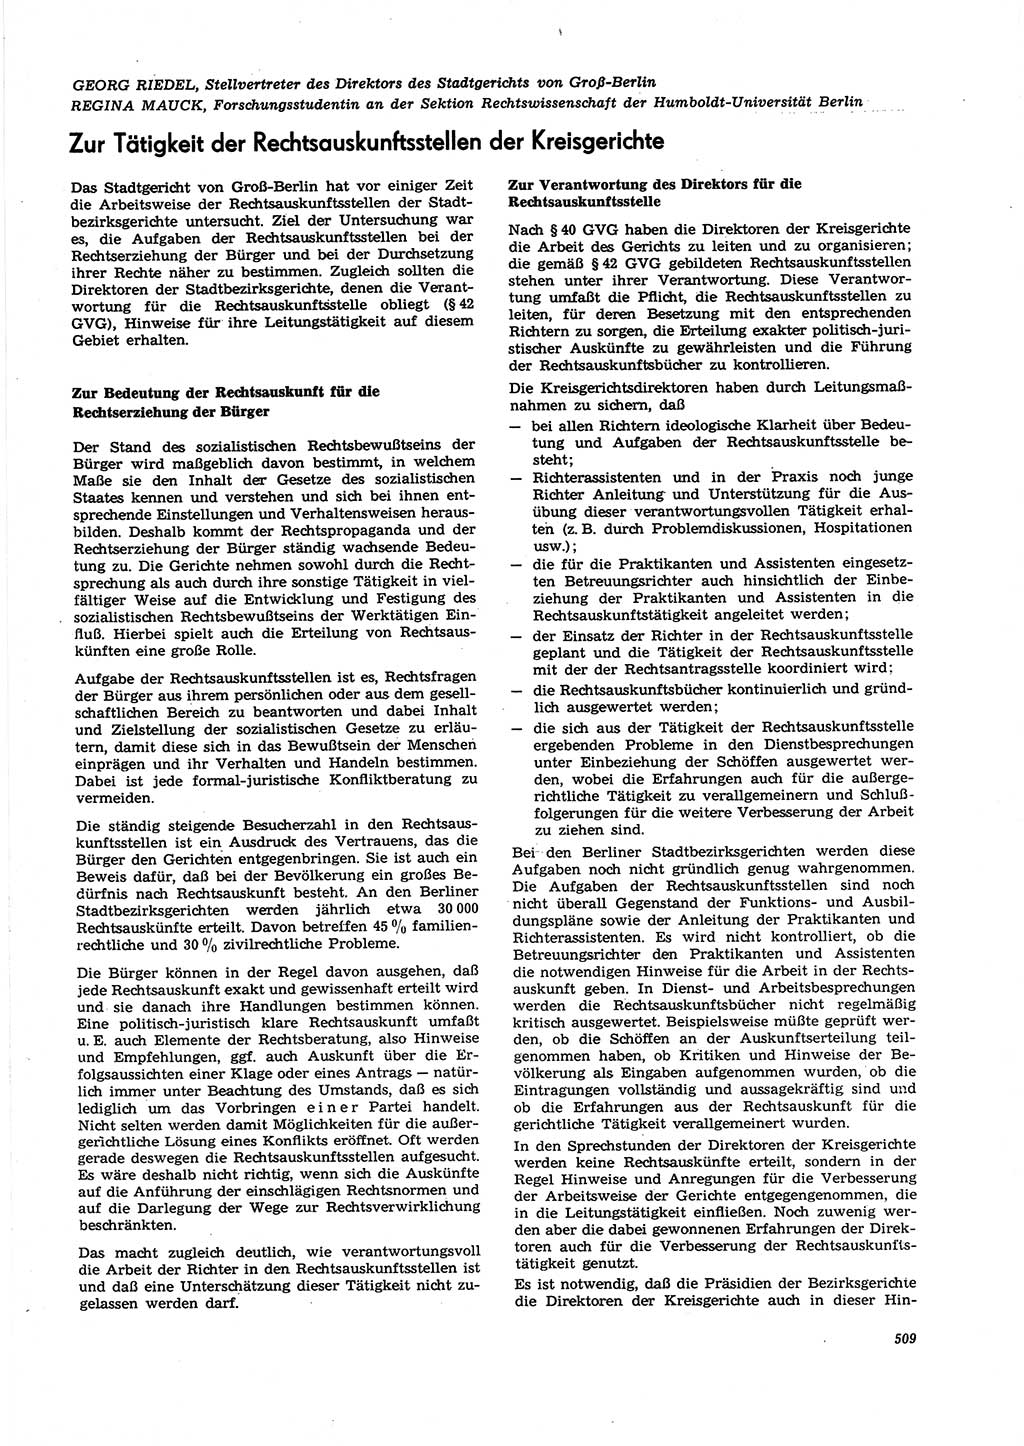 Neue Justiz (NJ), Zeitschrift für Recht und Rechtswissenschaft [Deutsche Demokratische Republik (DDR)], 27. Jahrgang 1973, Seite 509 (NJ DDR 1973, S. 509)